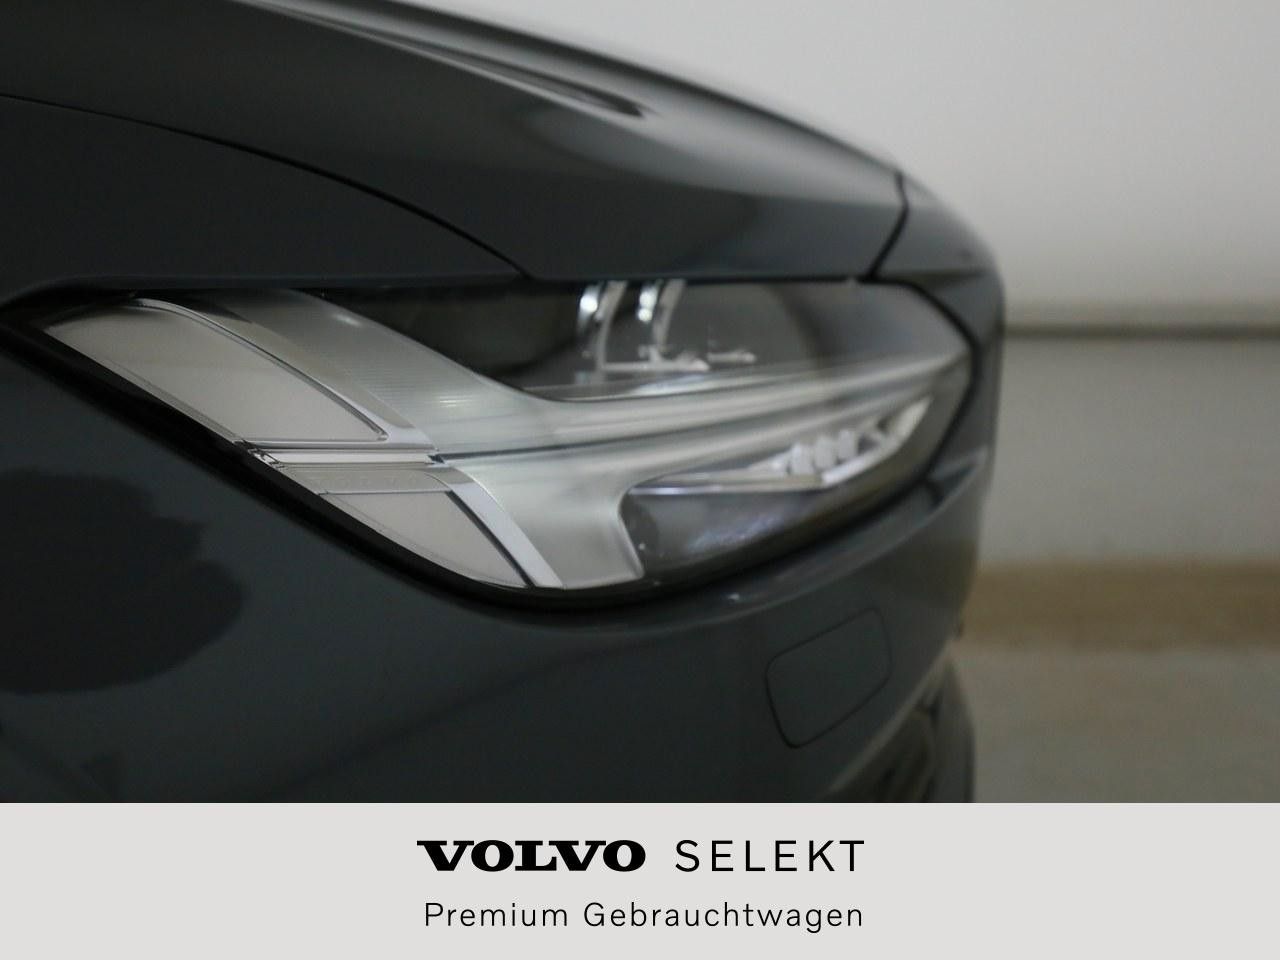 Volvo  B4  Mild-Hybrid Diesel 2WD Ultimate Dark